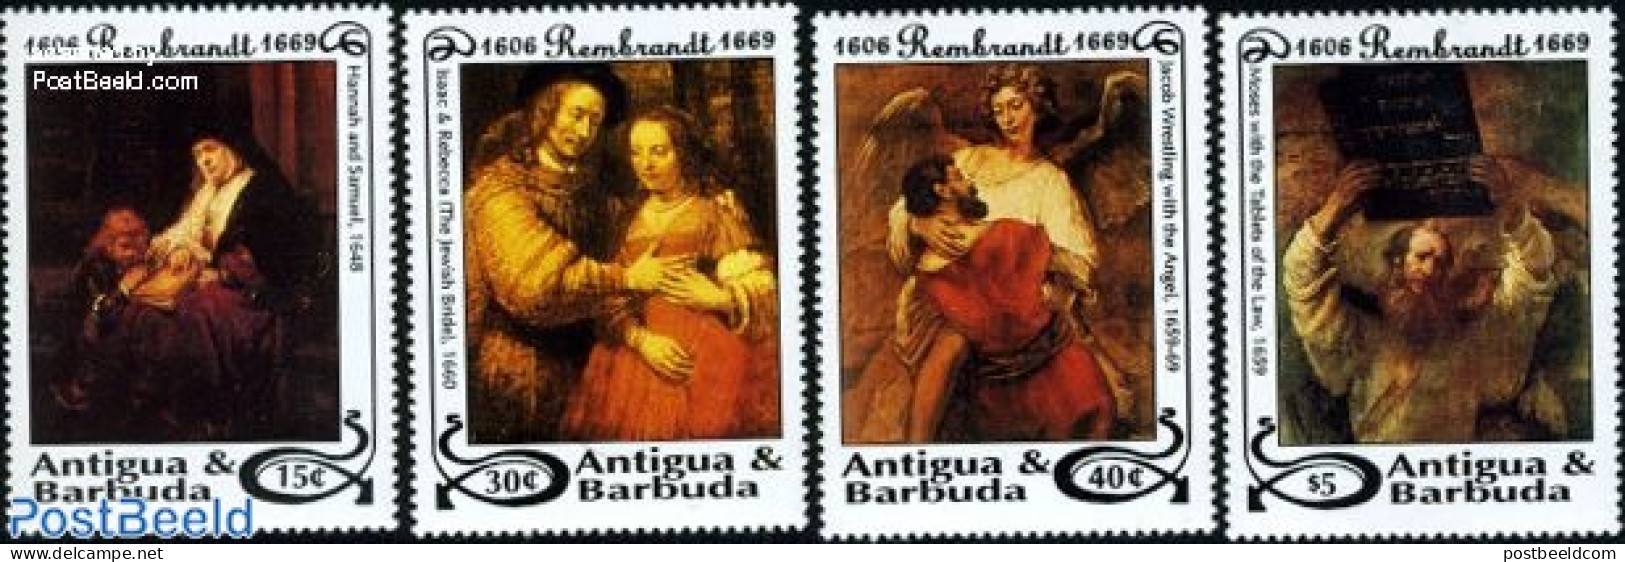 Antigua & Barbuda 1993 Rembrandt 4v, Mint NH, Art - Paintings - Rembrandt - Antigua Y Barbuda (1981-...)